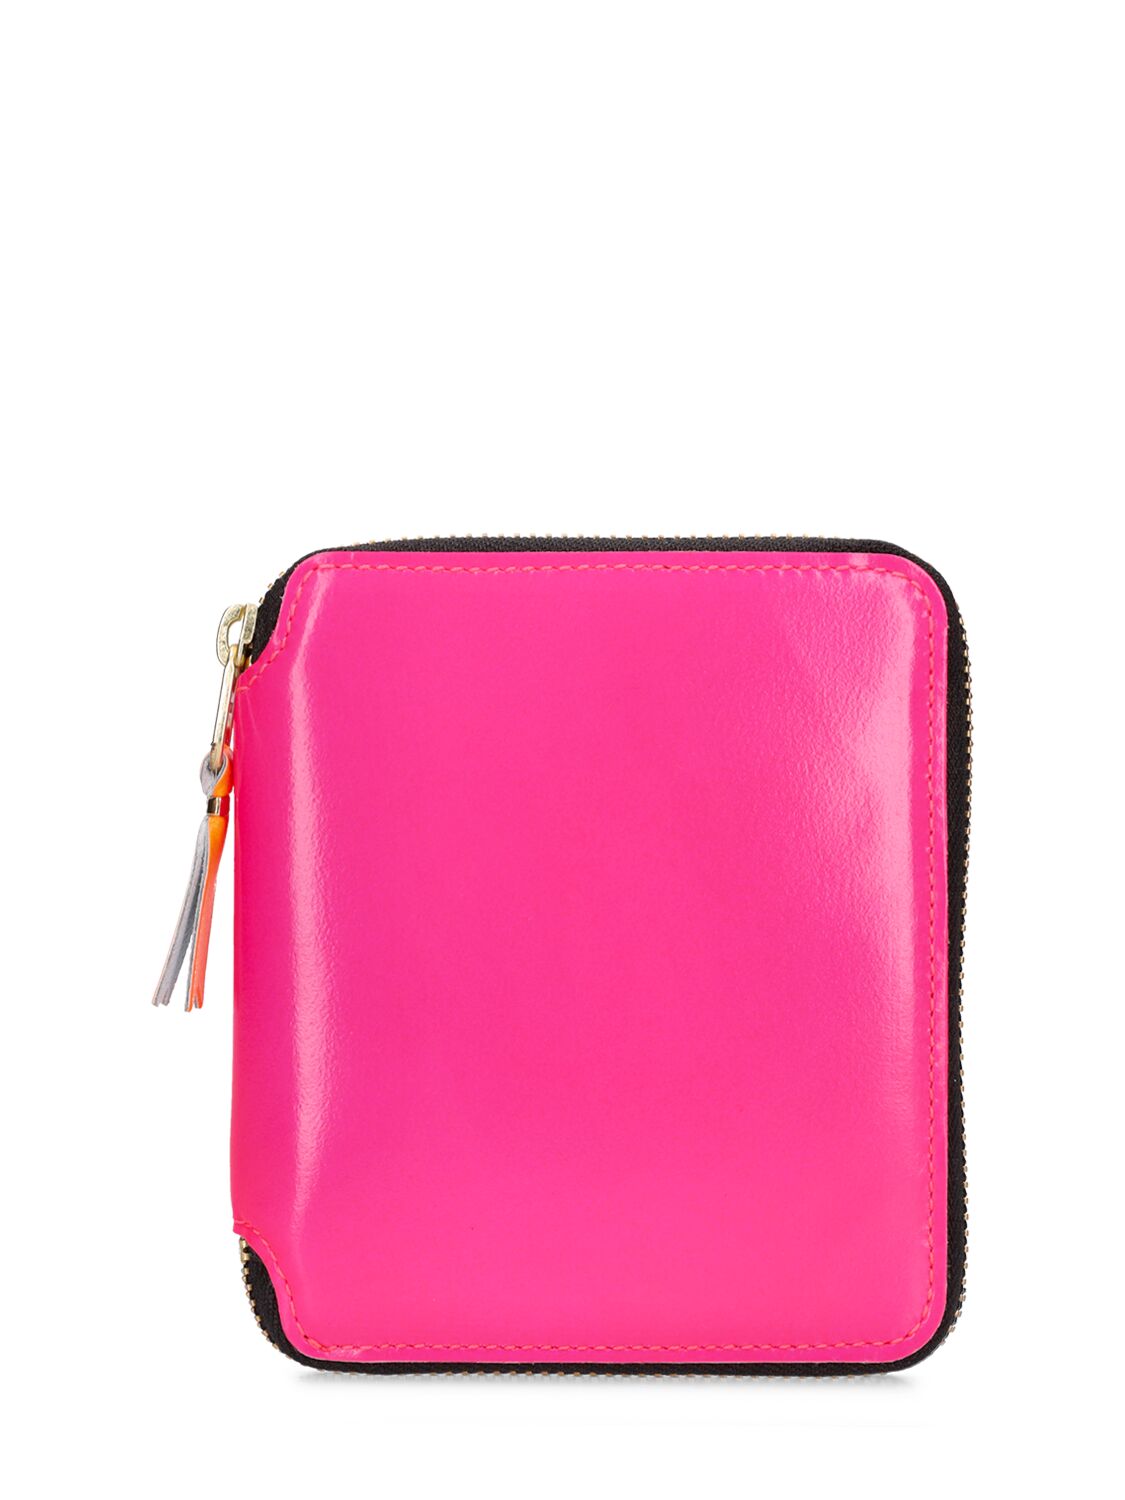 Comme Des Garçons Super Fluo Leather Wallet In Pink